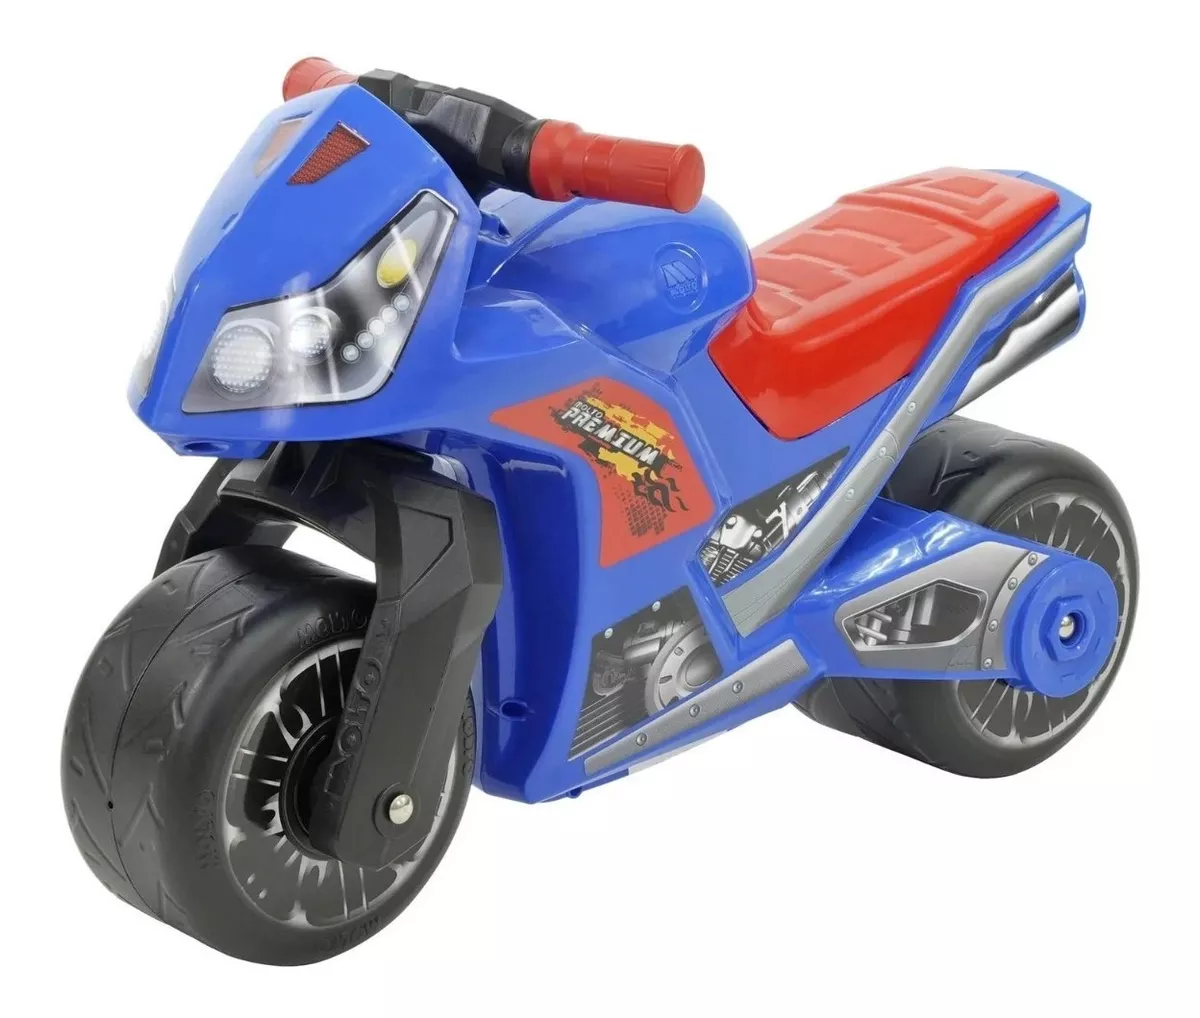 Segunda imagen para búsqueda de motos para niños